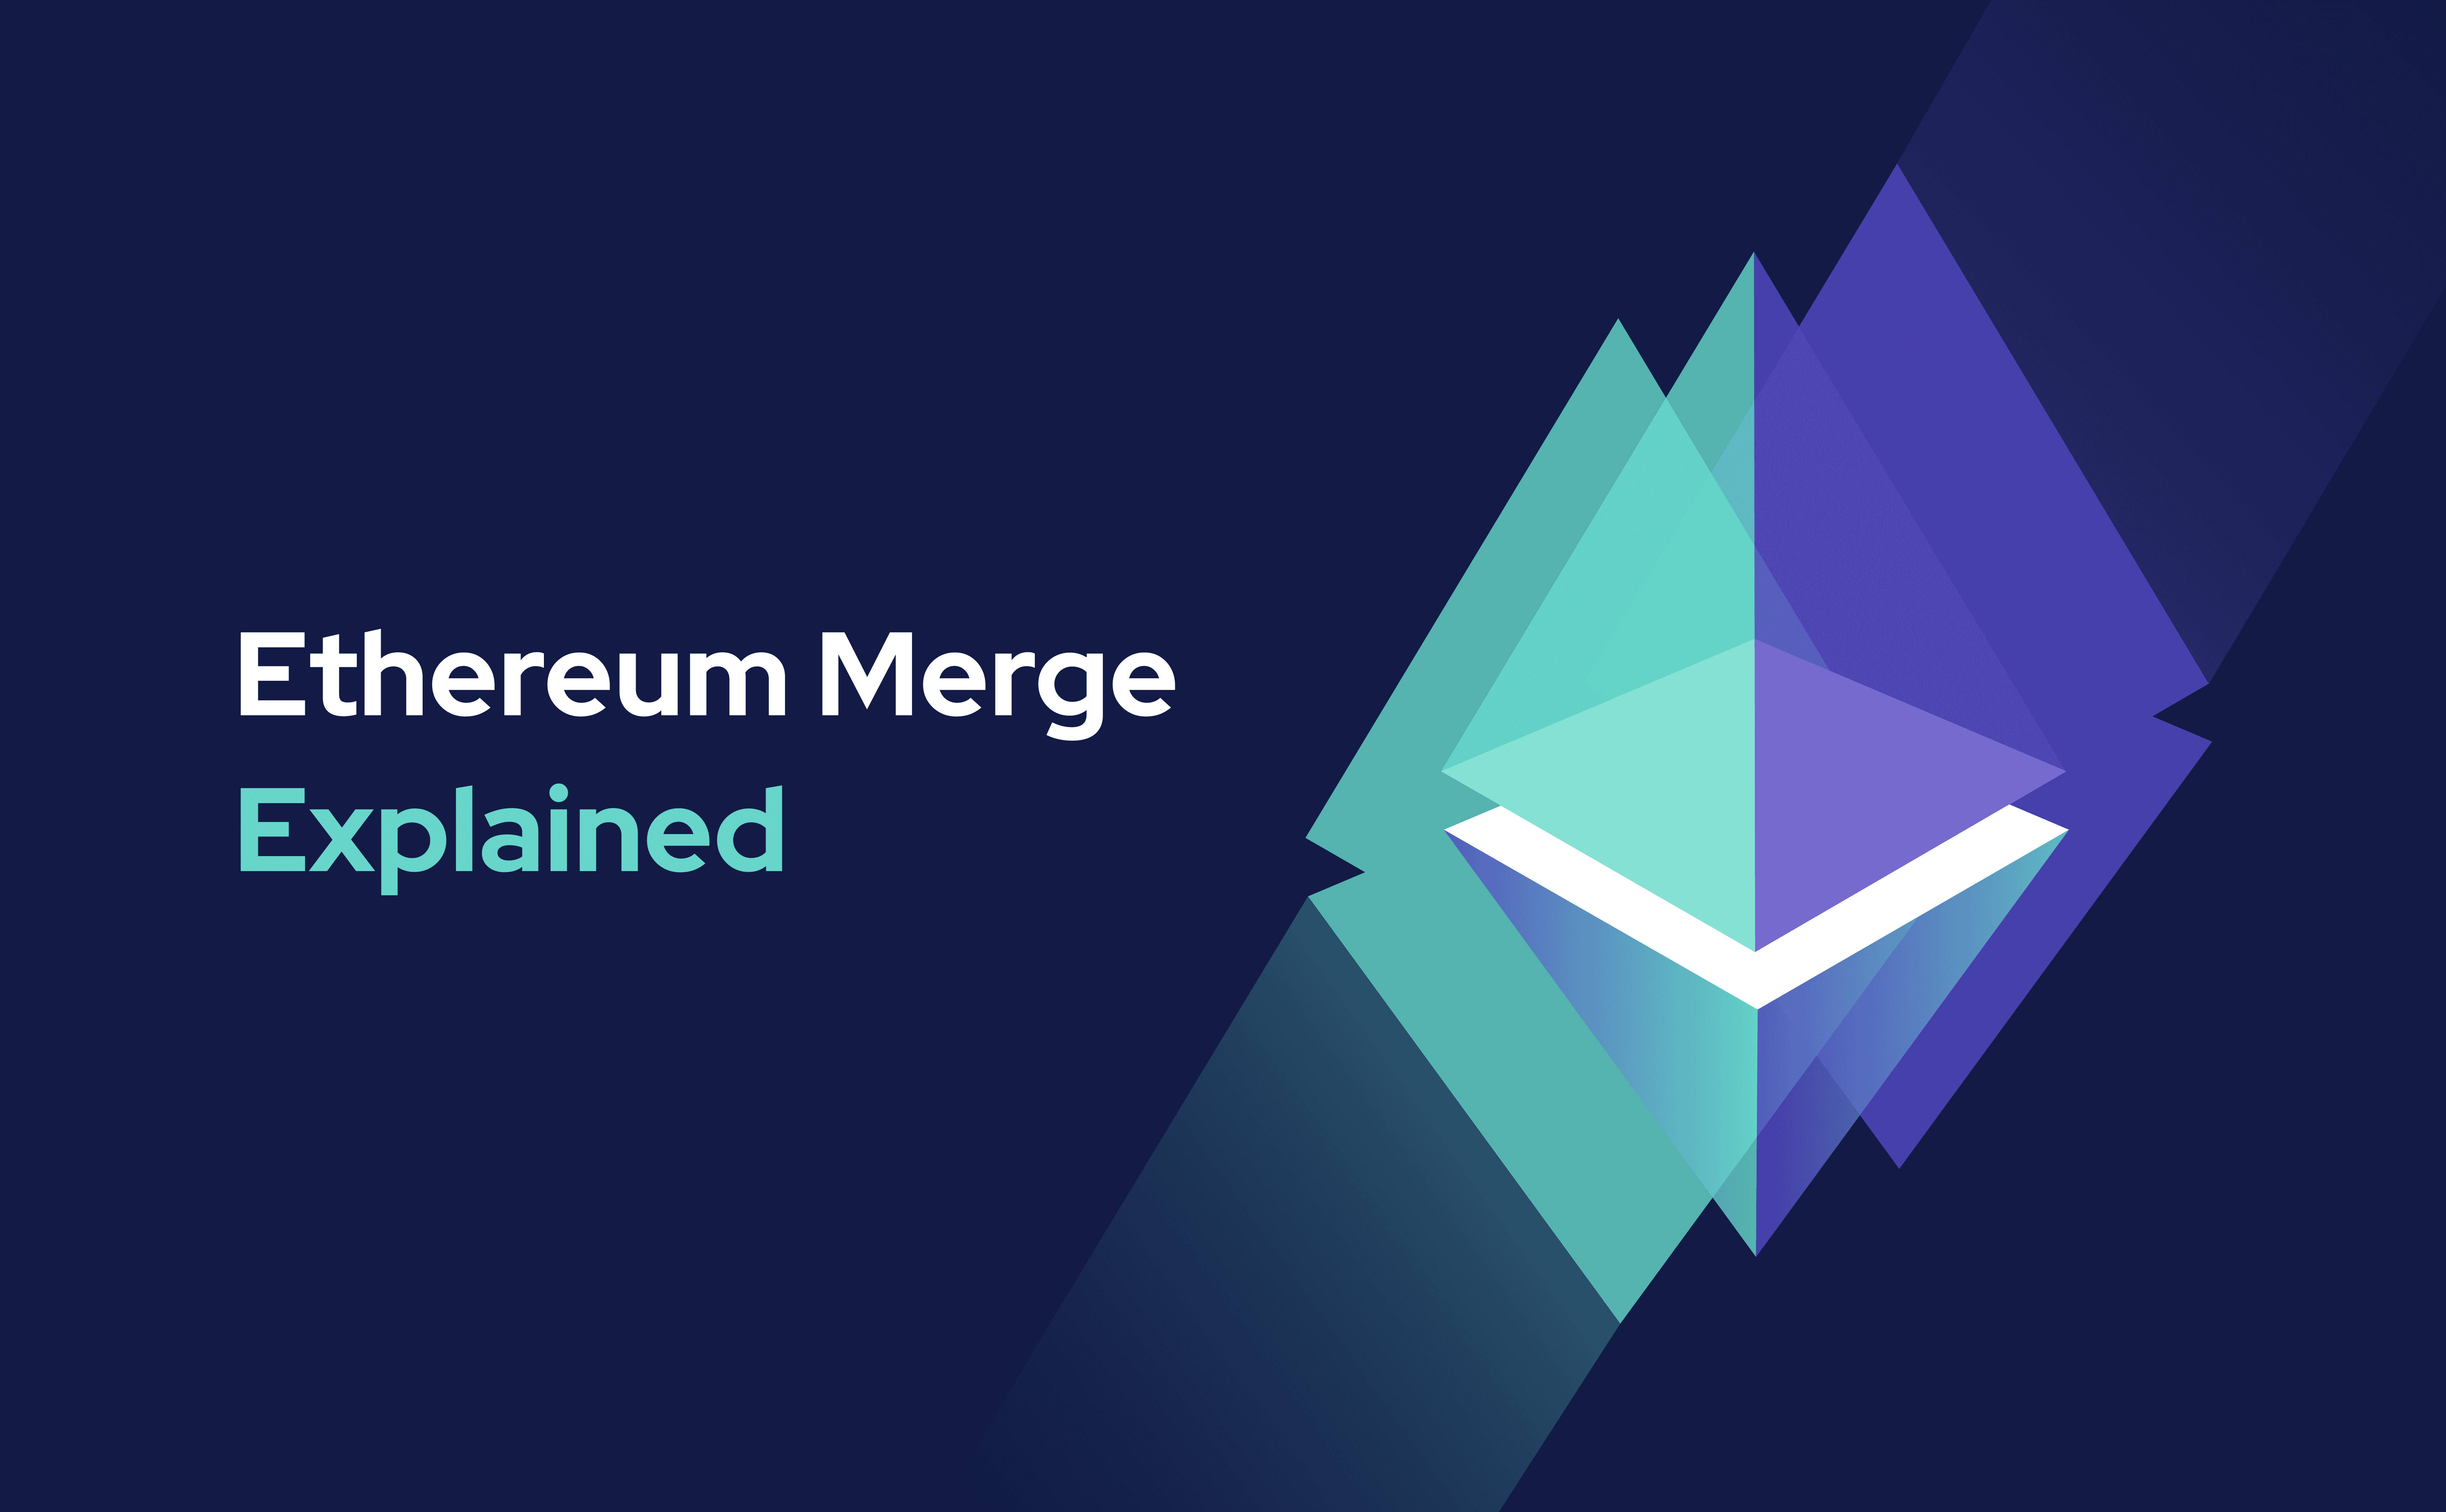 Ethereum merge explained